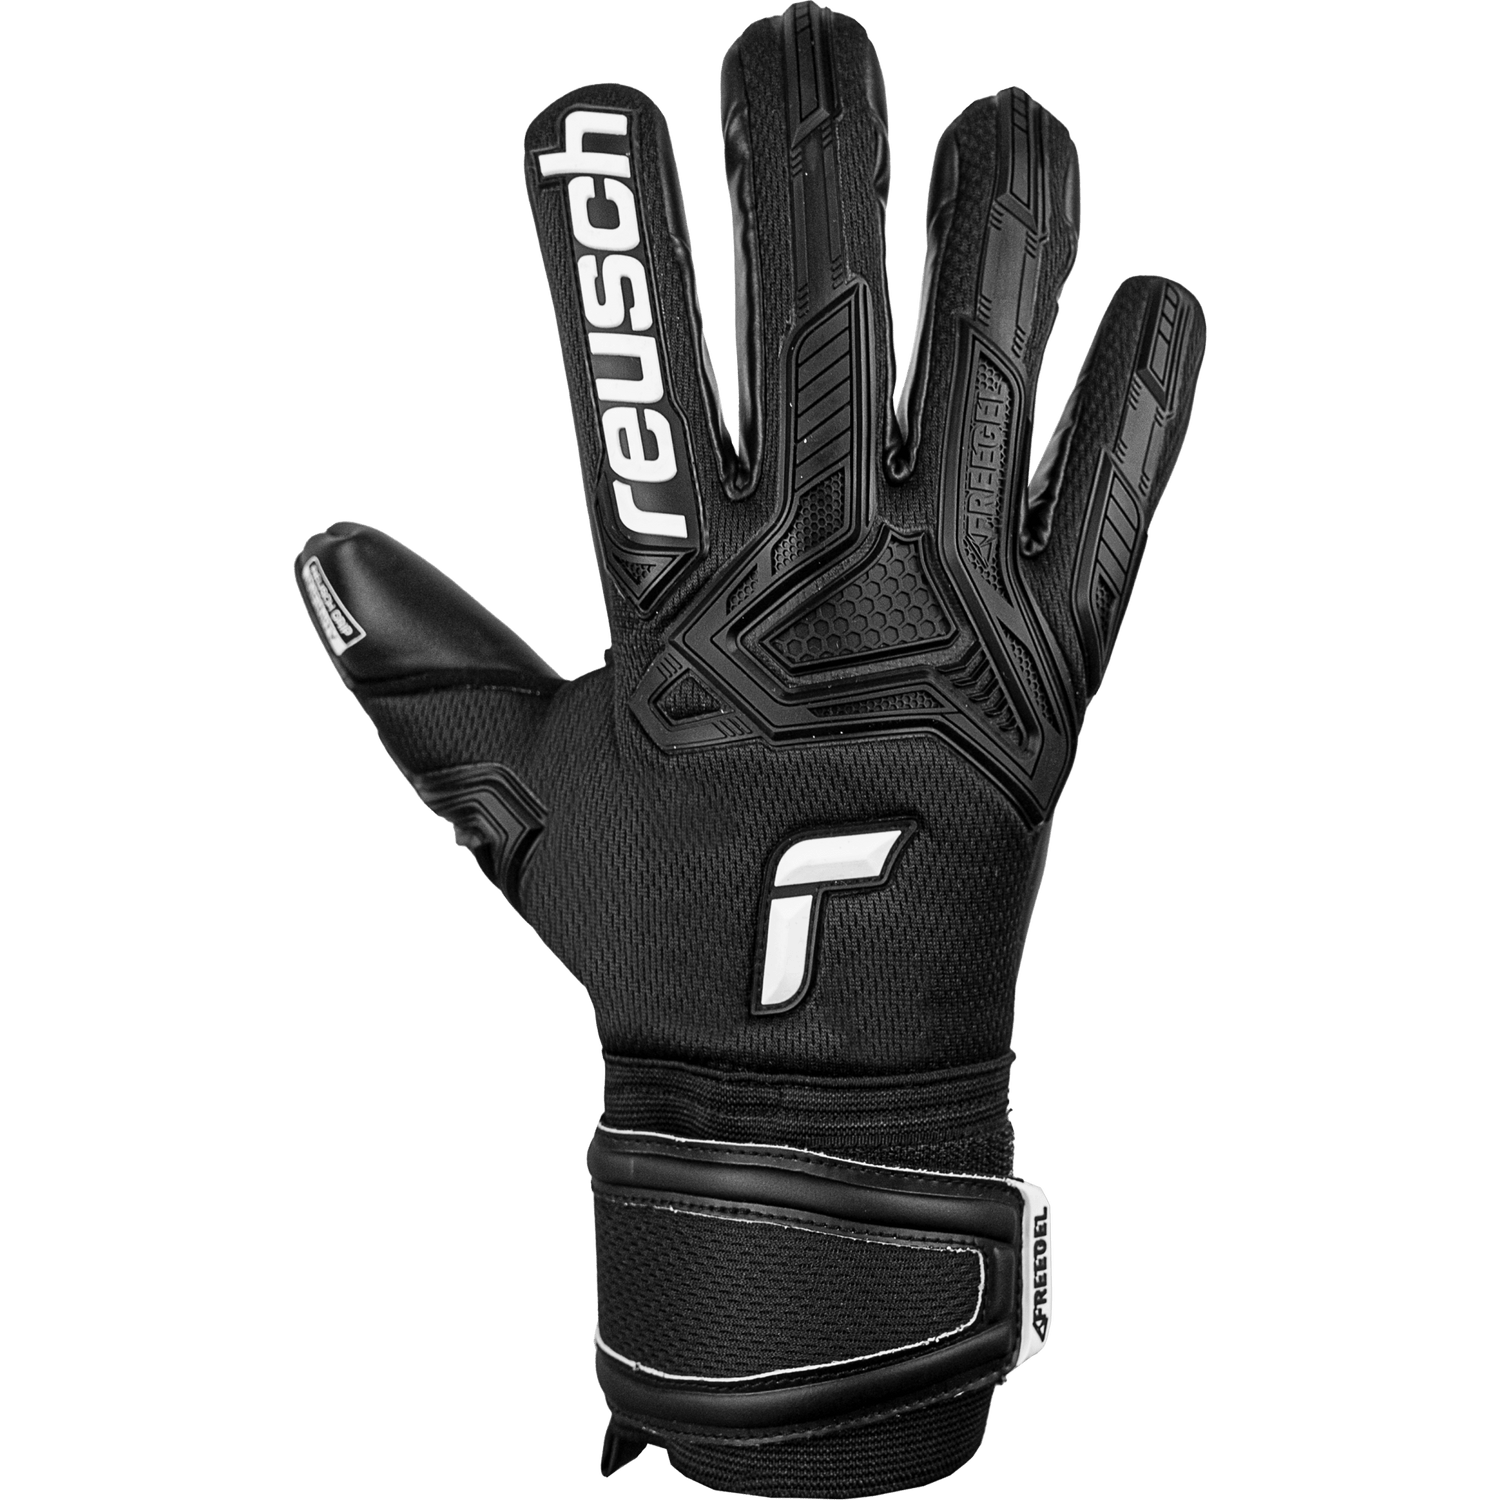 Reusch Attrakt Freegel Infinity FS Goalkeeper Glove - Black (Single - Outer)